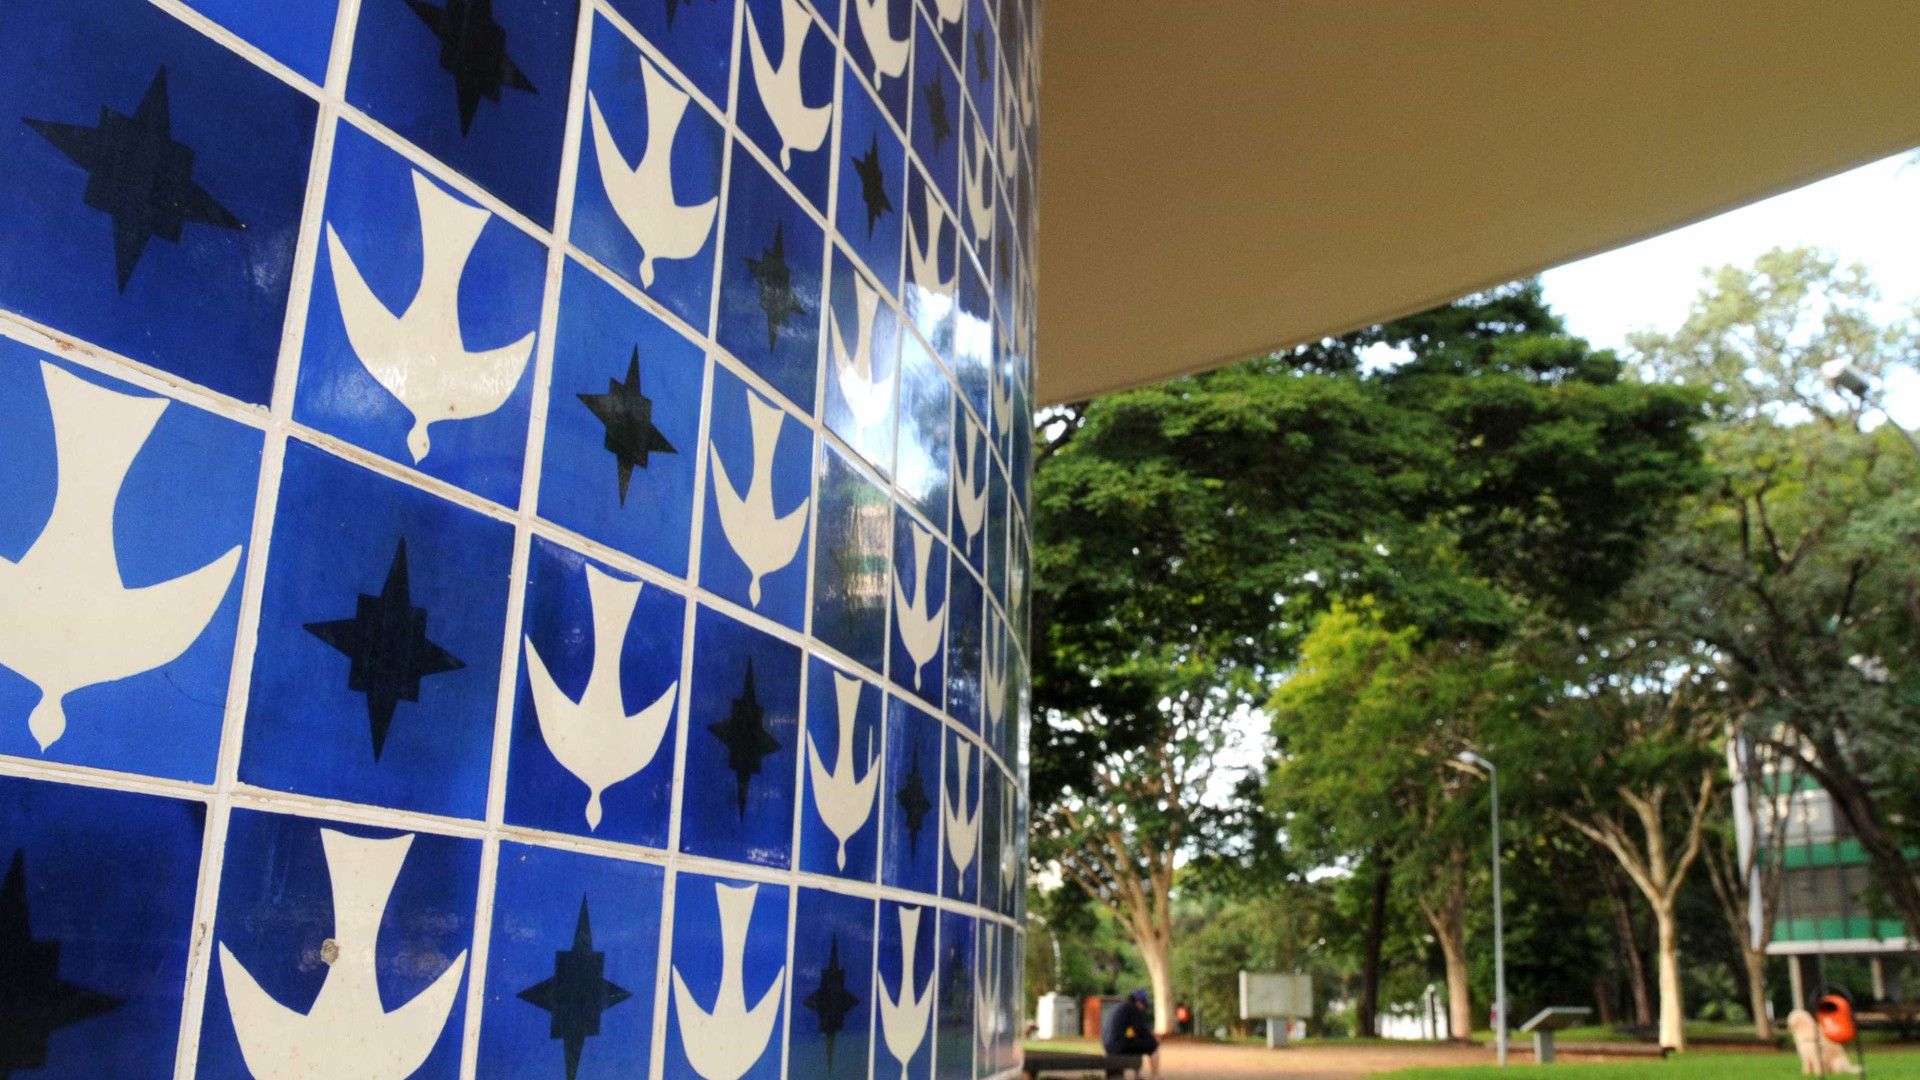 Artista que coloriu azulejos de Brasília, Athos Bulcão faz centenário